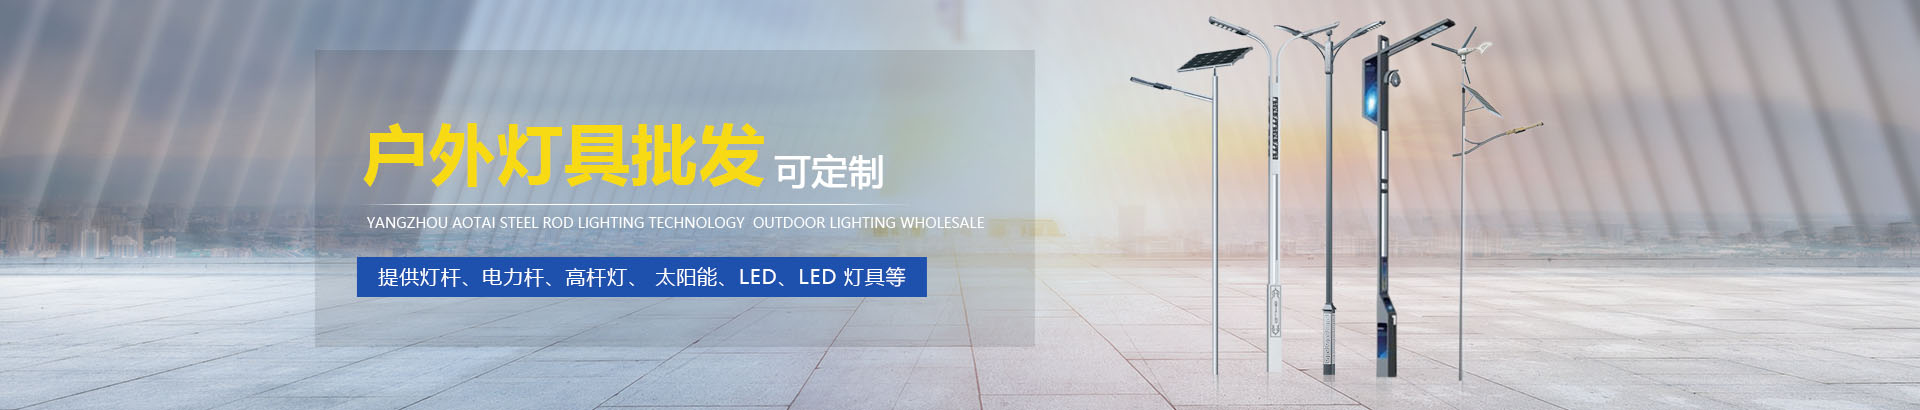 扬州奥泰钢杆照明科技发展有限公司